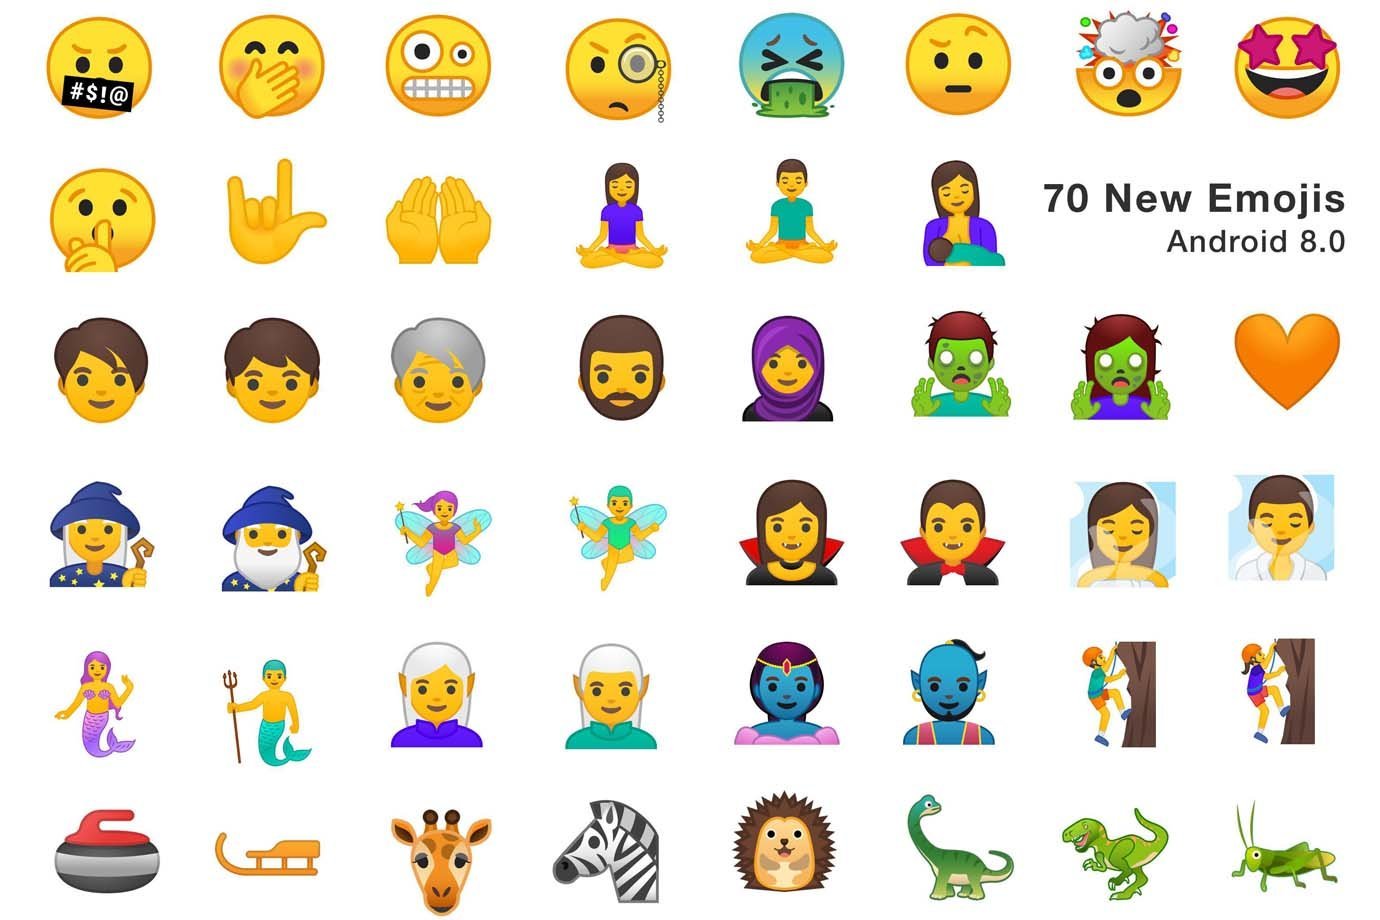 Novo emojis do Android Oreo